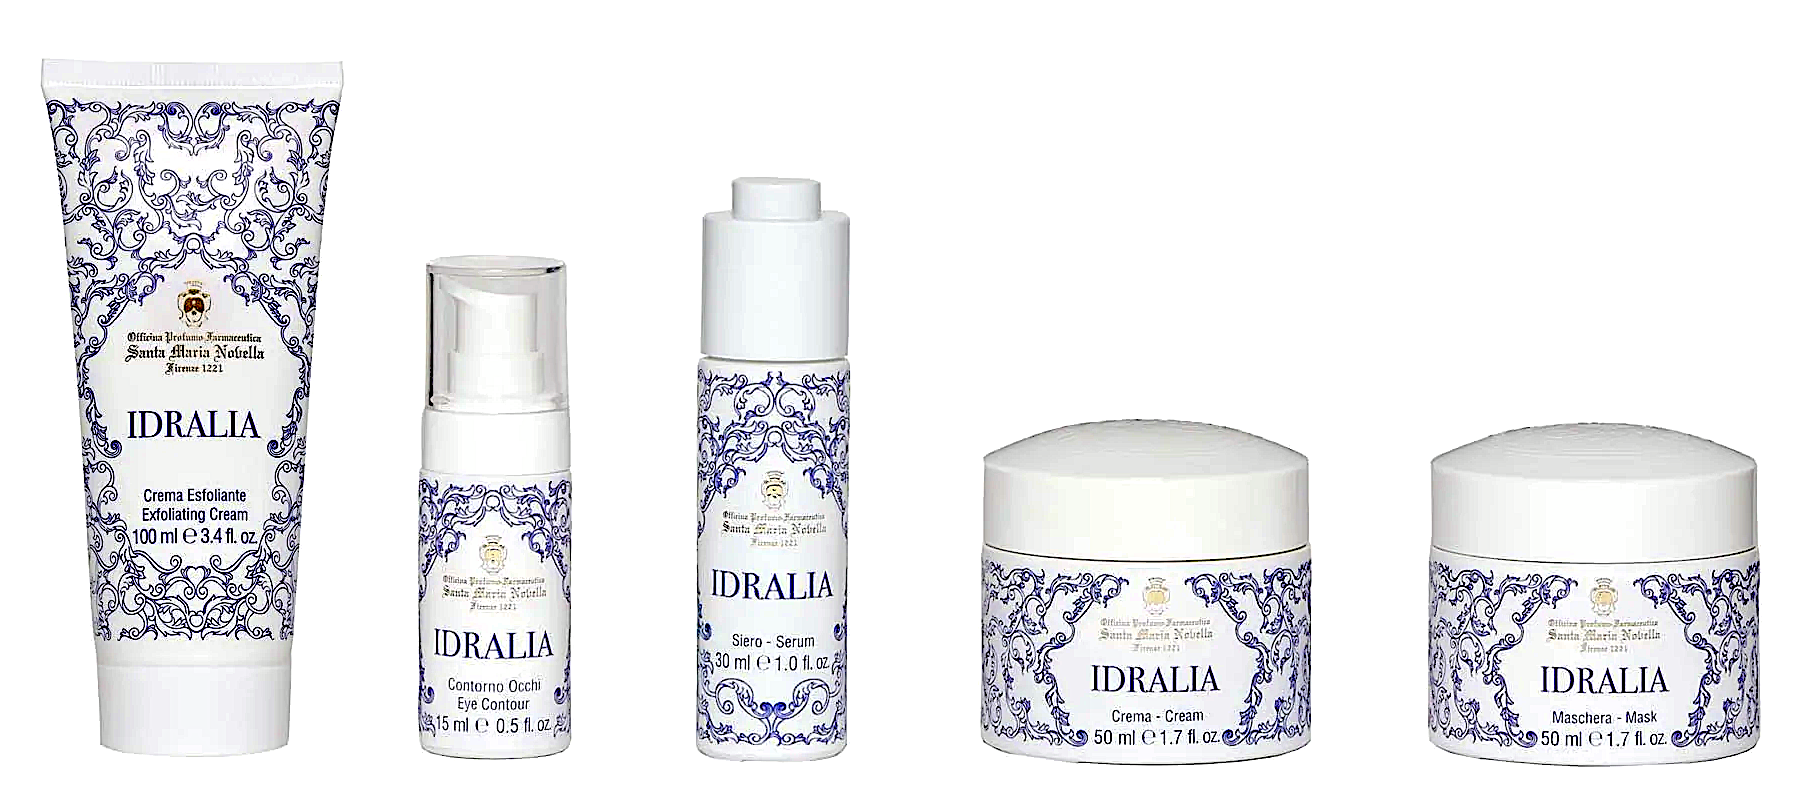 Idralia gamme cosmétique de 5 produits SANTA MARIA Novella